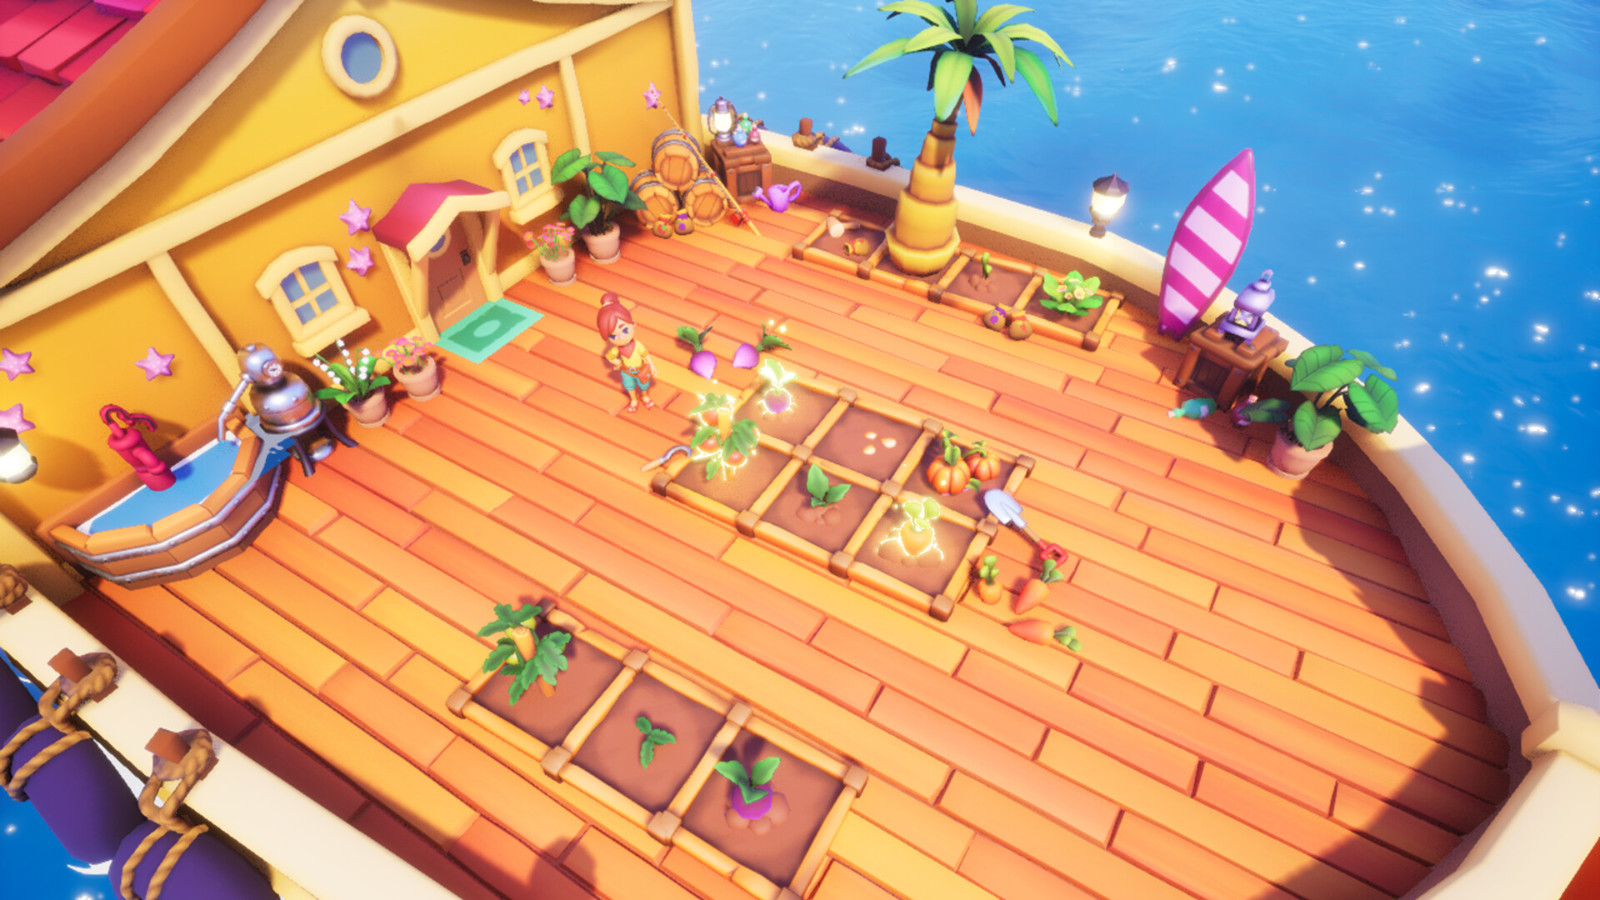 海岛冒险农场模拟游戏《寻宝湾》Steam页面开放 发行日期待定